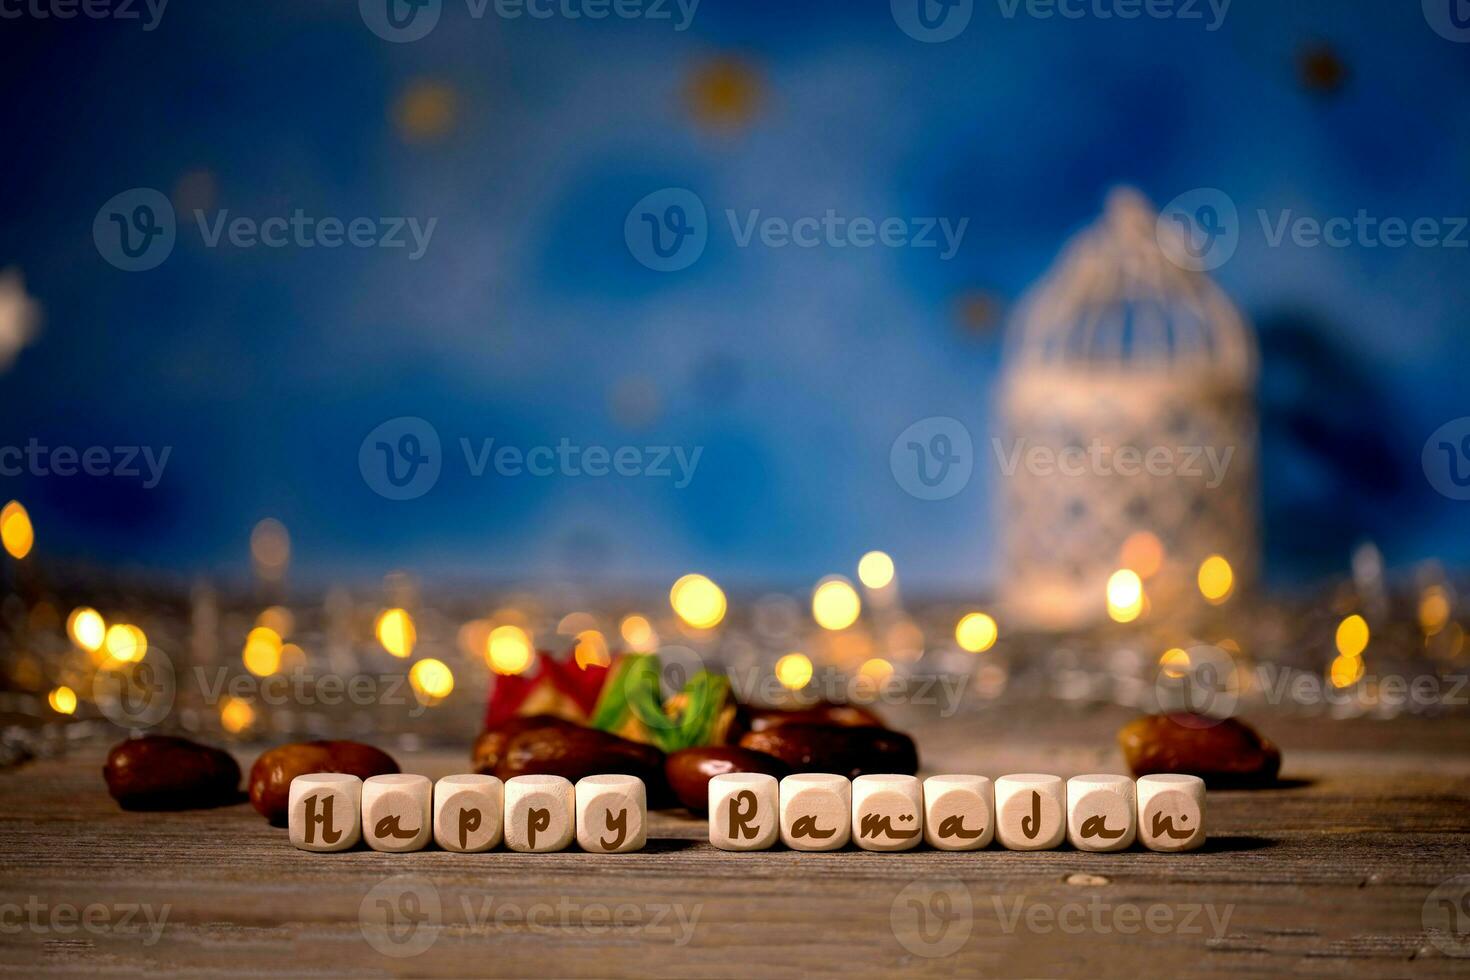 Congratulation HAPPY RAMADAN composed of wooden dices photo